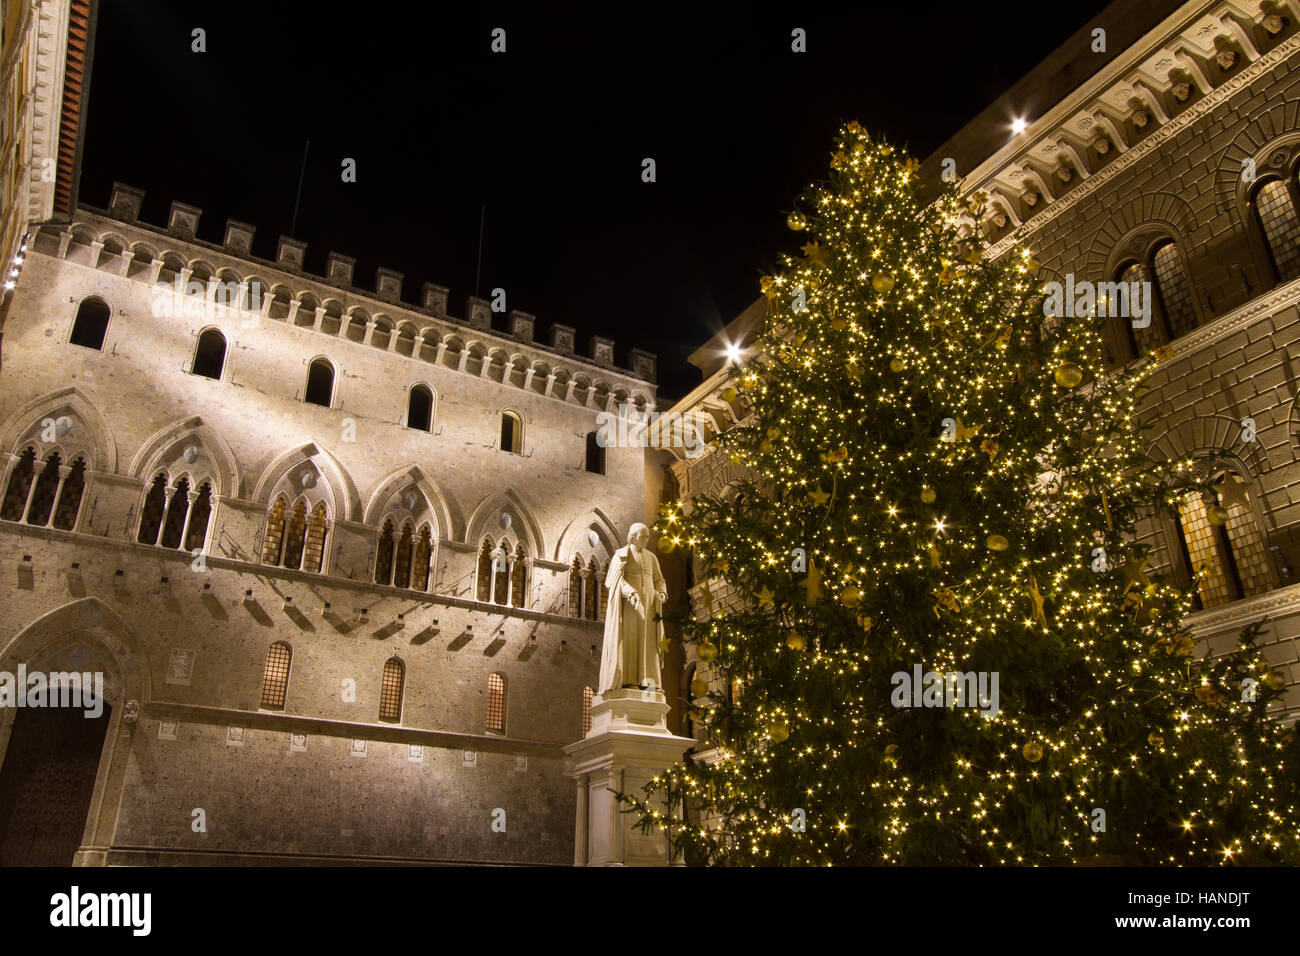 Sienne, Italie - Décembre 08, 2015 : Palazzo Salimbeni, siège de la Monte dei Paschi di Siena bank Banque D'Images